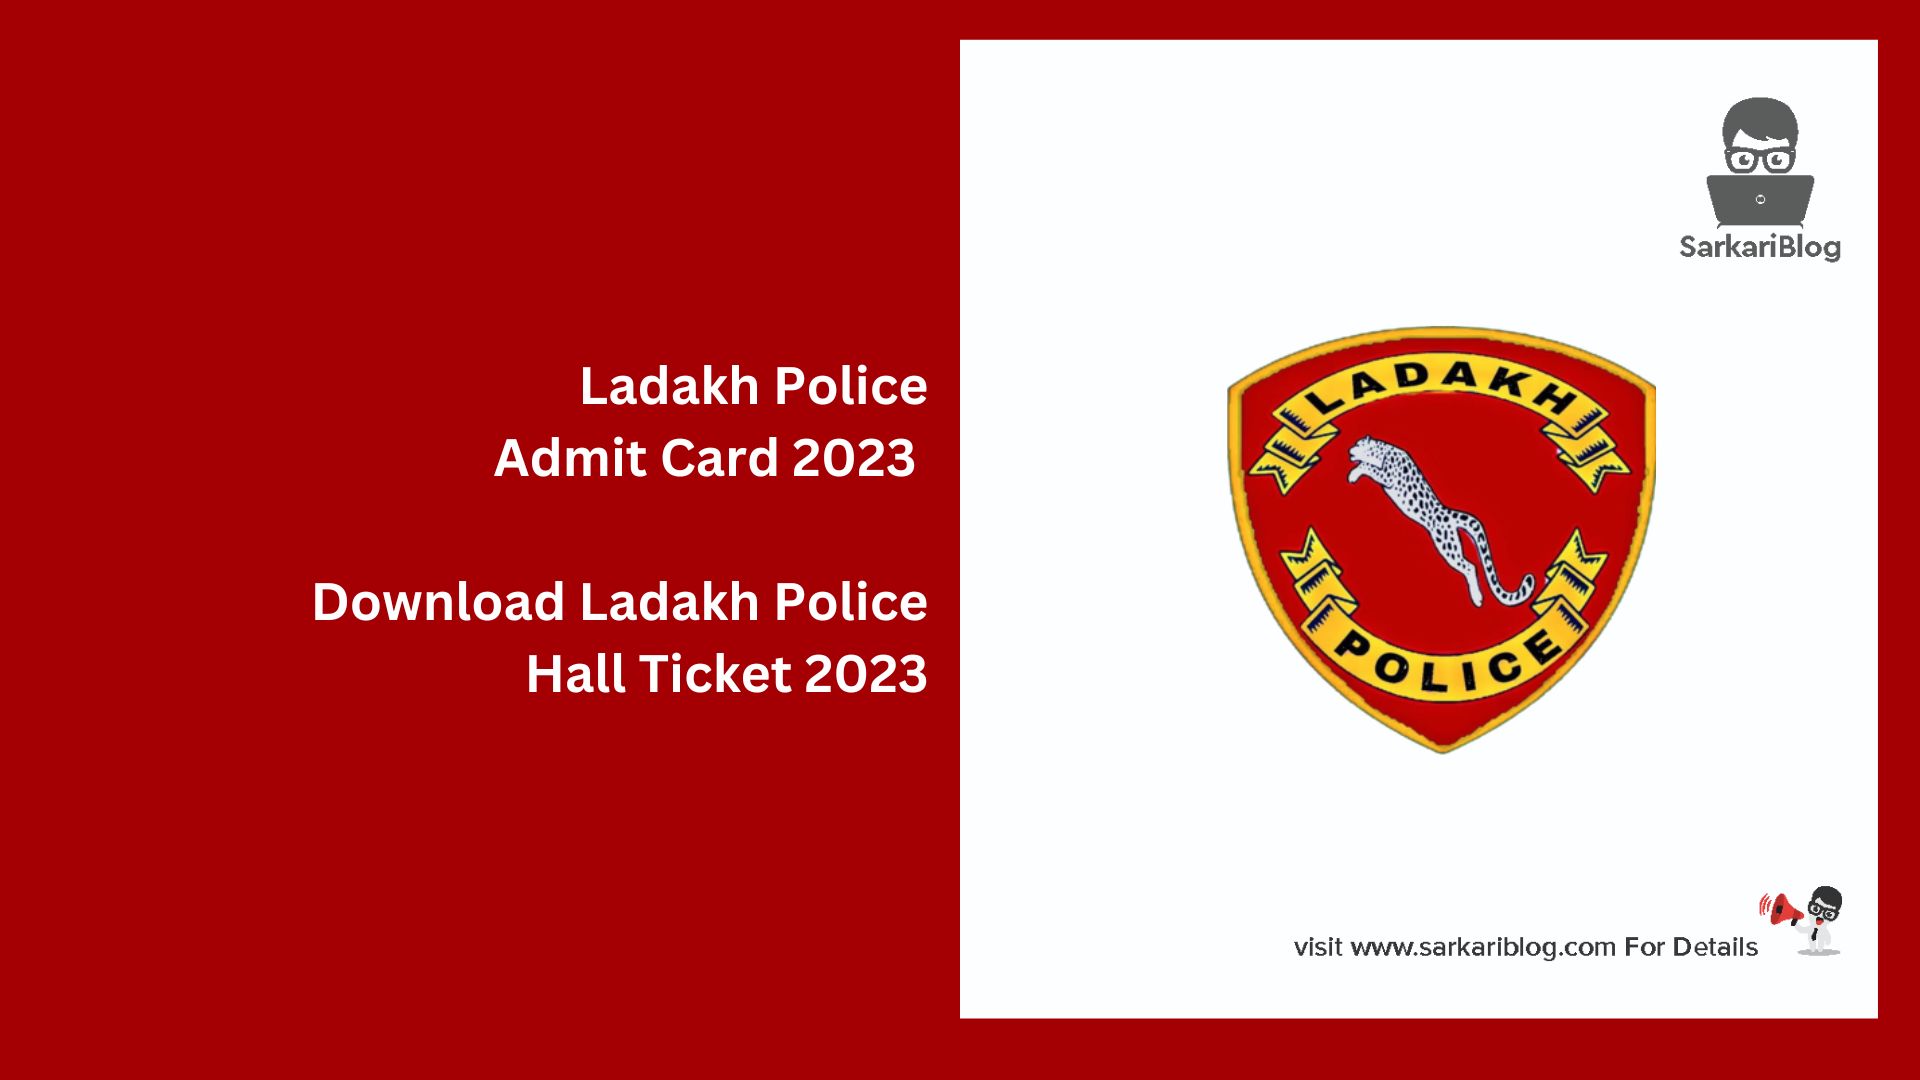 Ladakh Police Admit Card 2023